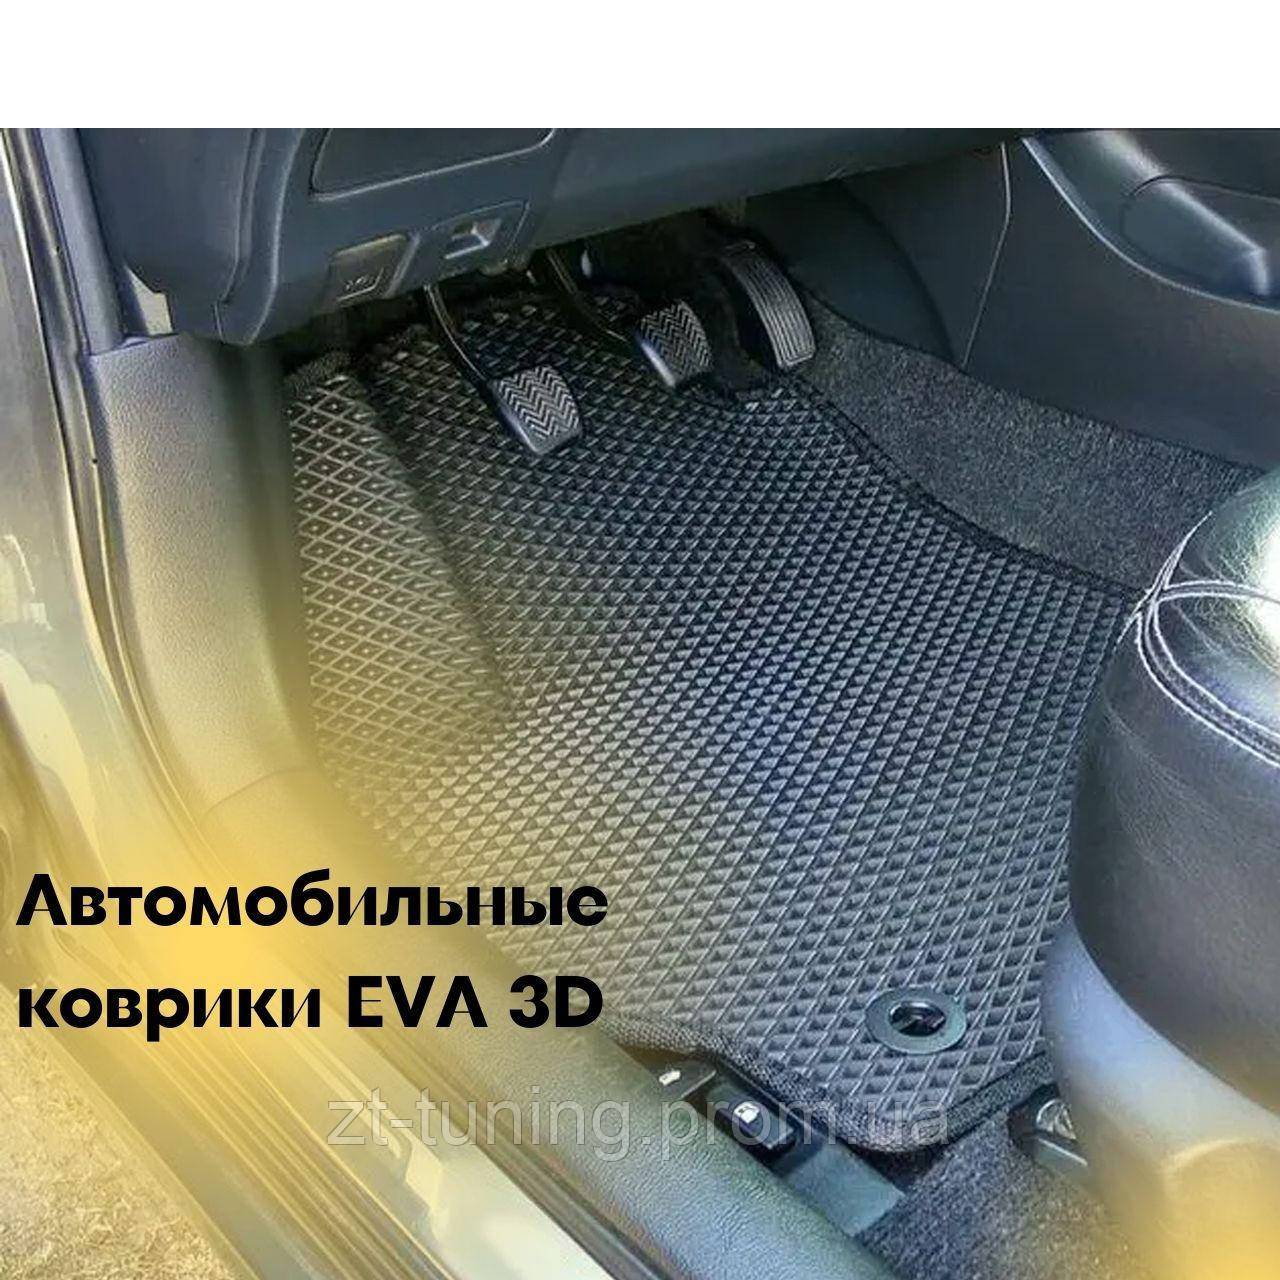 Коврики автомобильные EVA 3D на Audi A3 Hb 3d 8P 2004-2012  Ковры в салон эва с бортами эво Коврики в салон